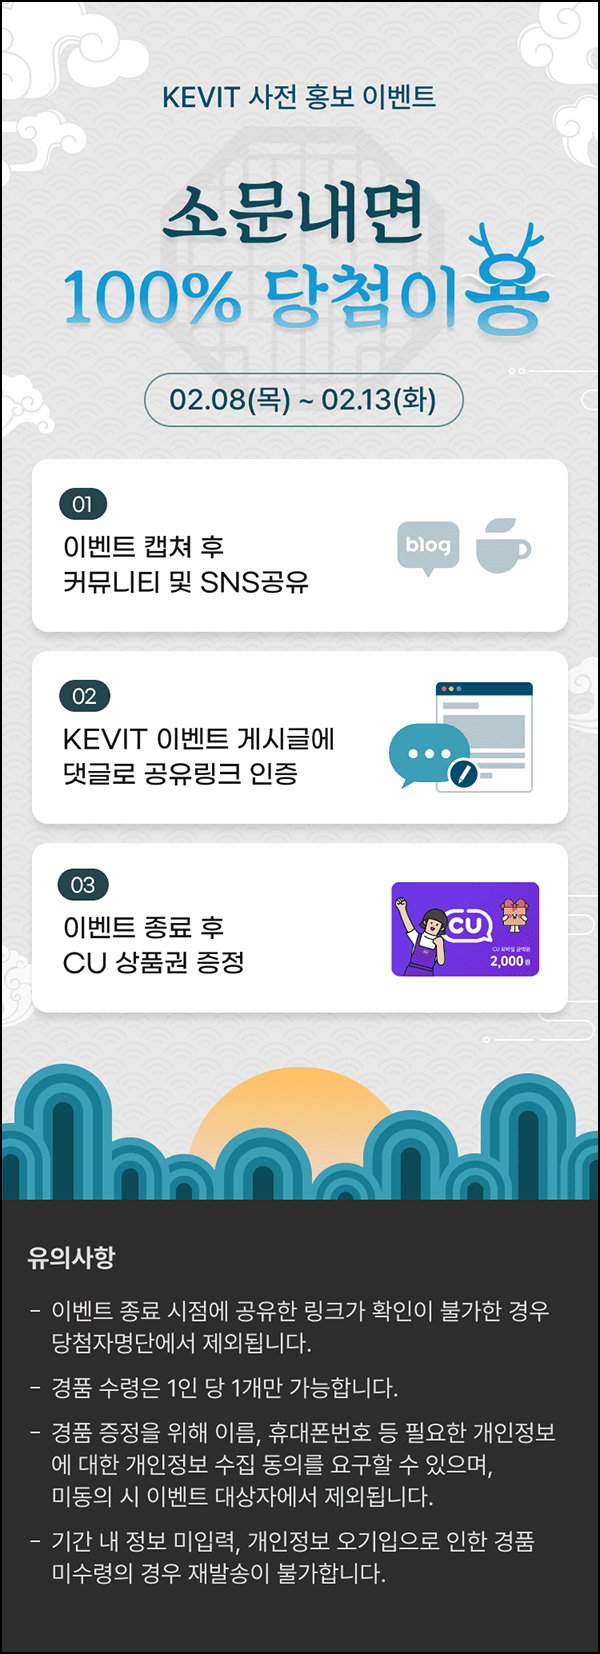 (종료)KEVIT 소문내기 이벤트(CU 2천원)전원